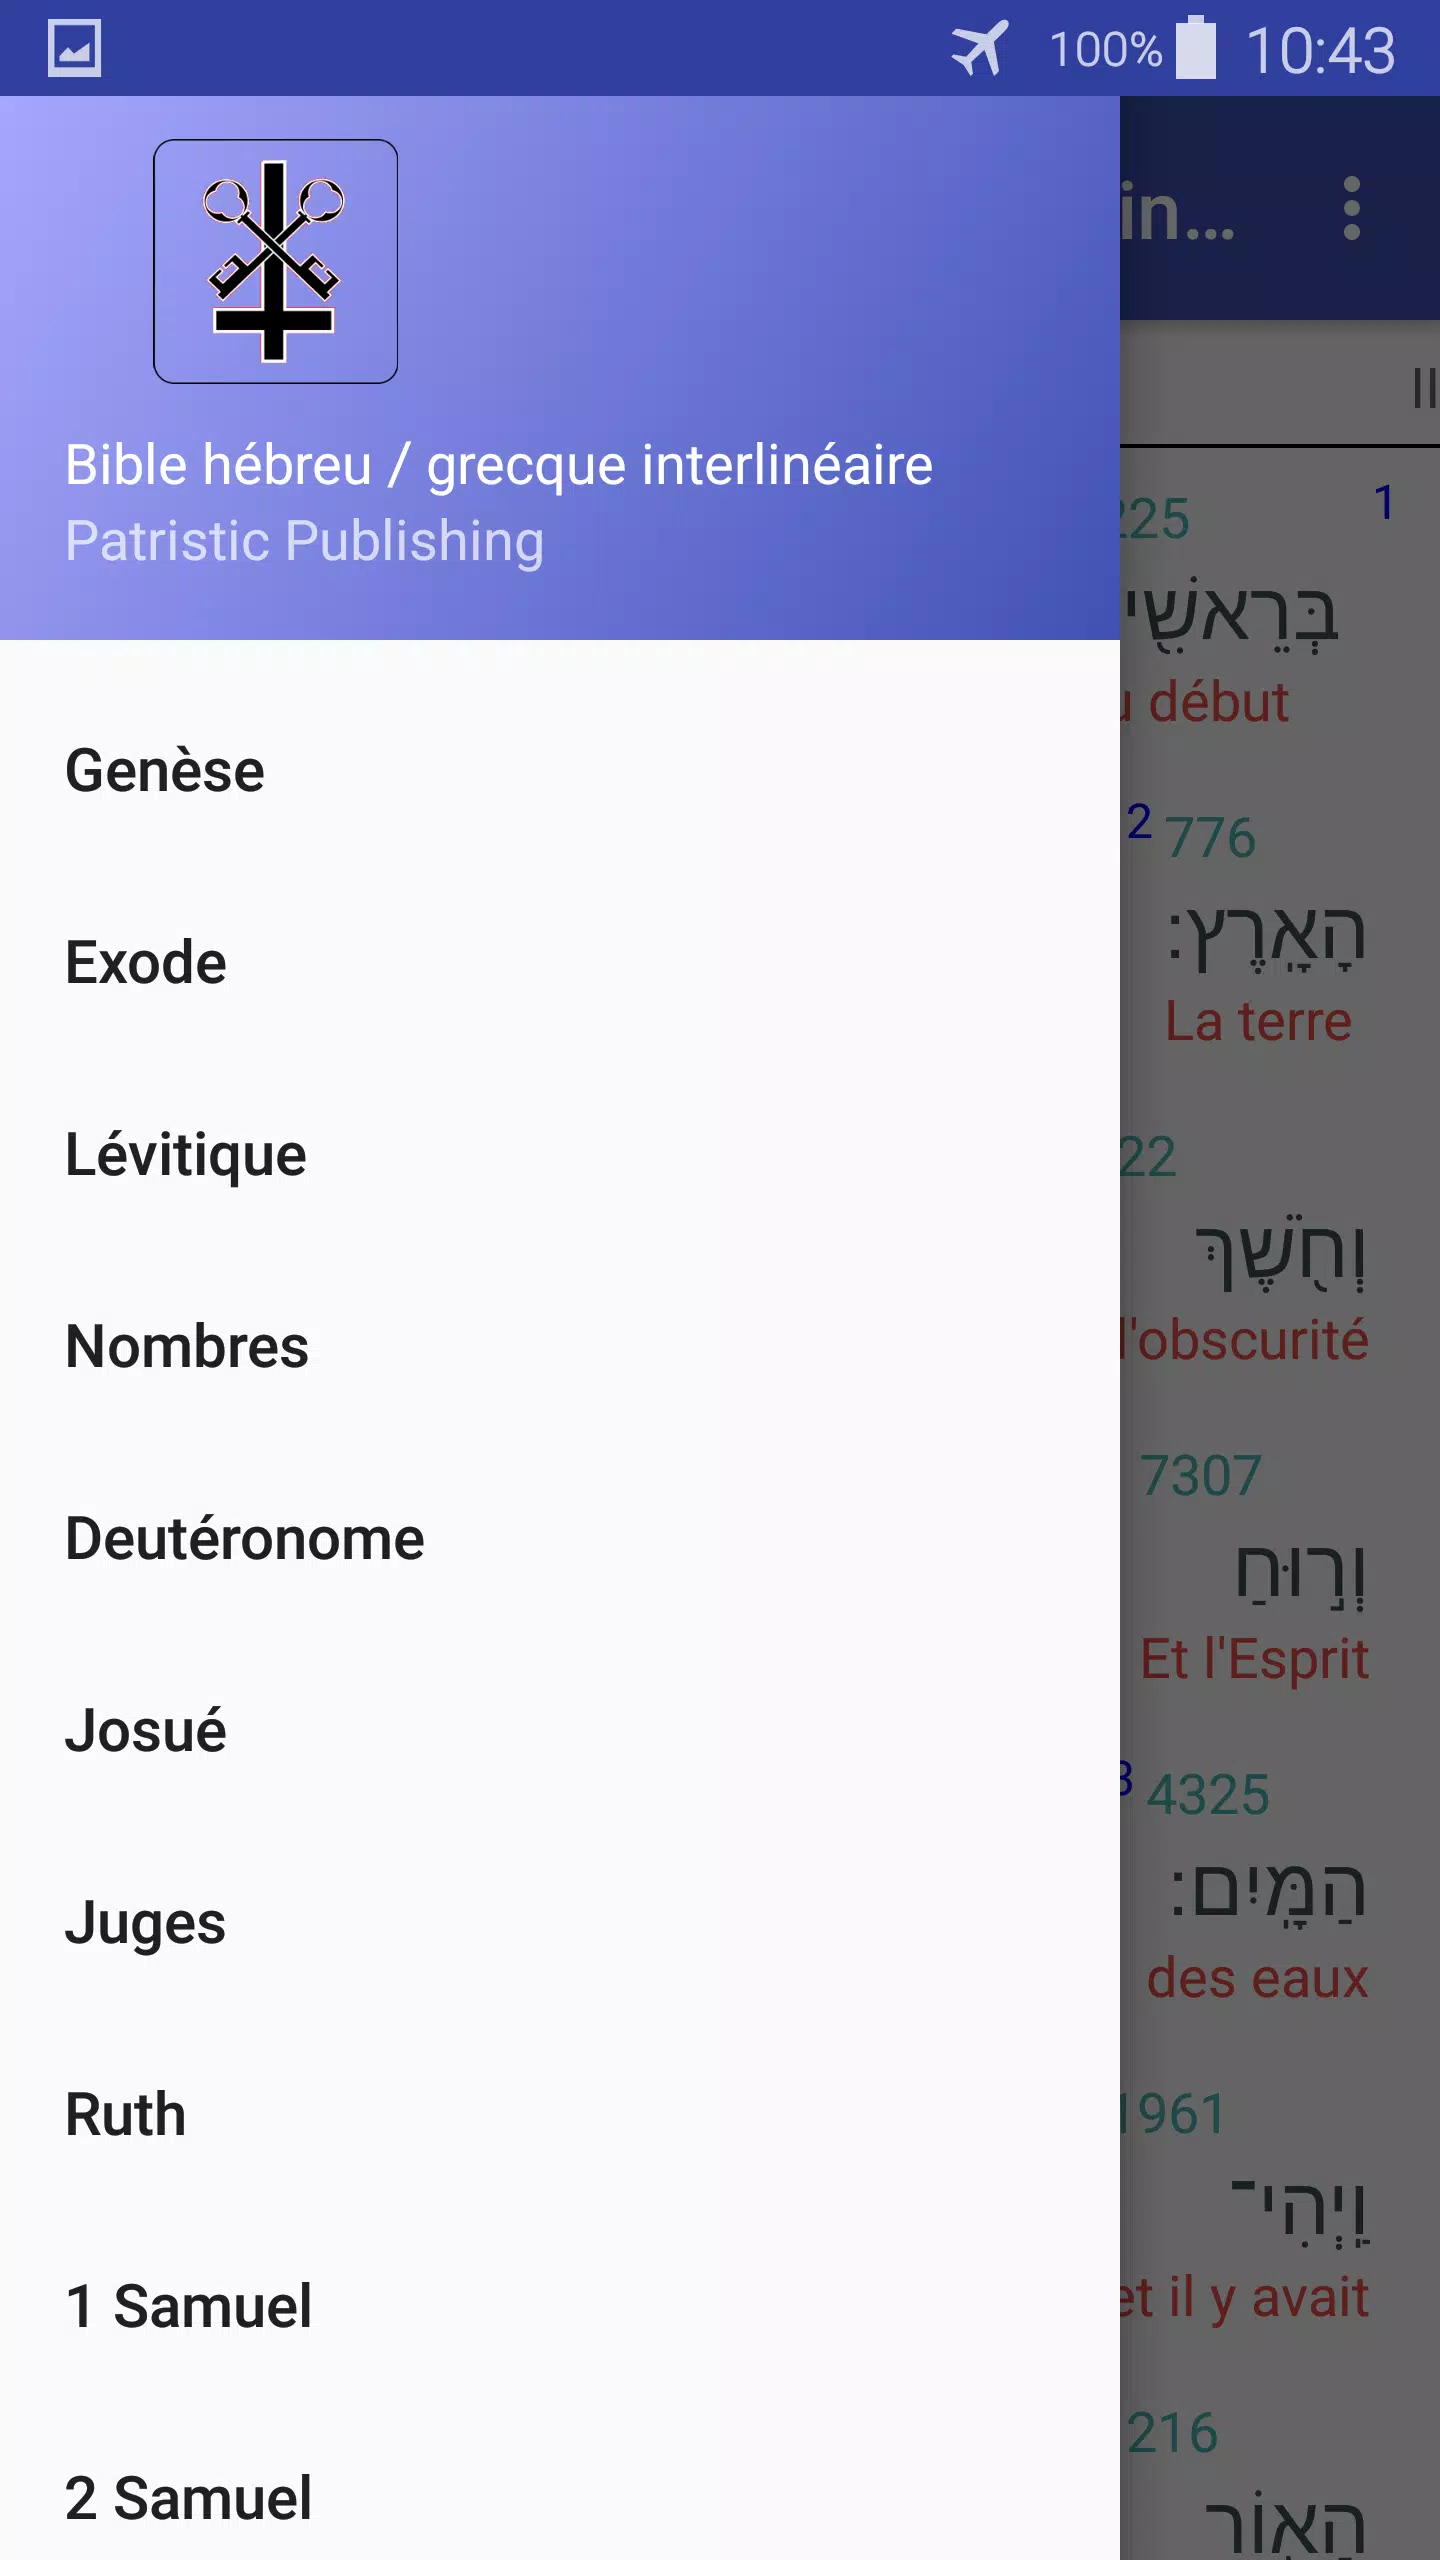 Interlinéaire français / hébreu - Grec Bible for Android - APK Download